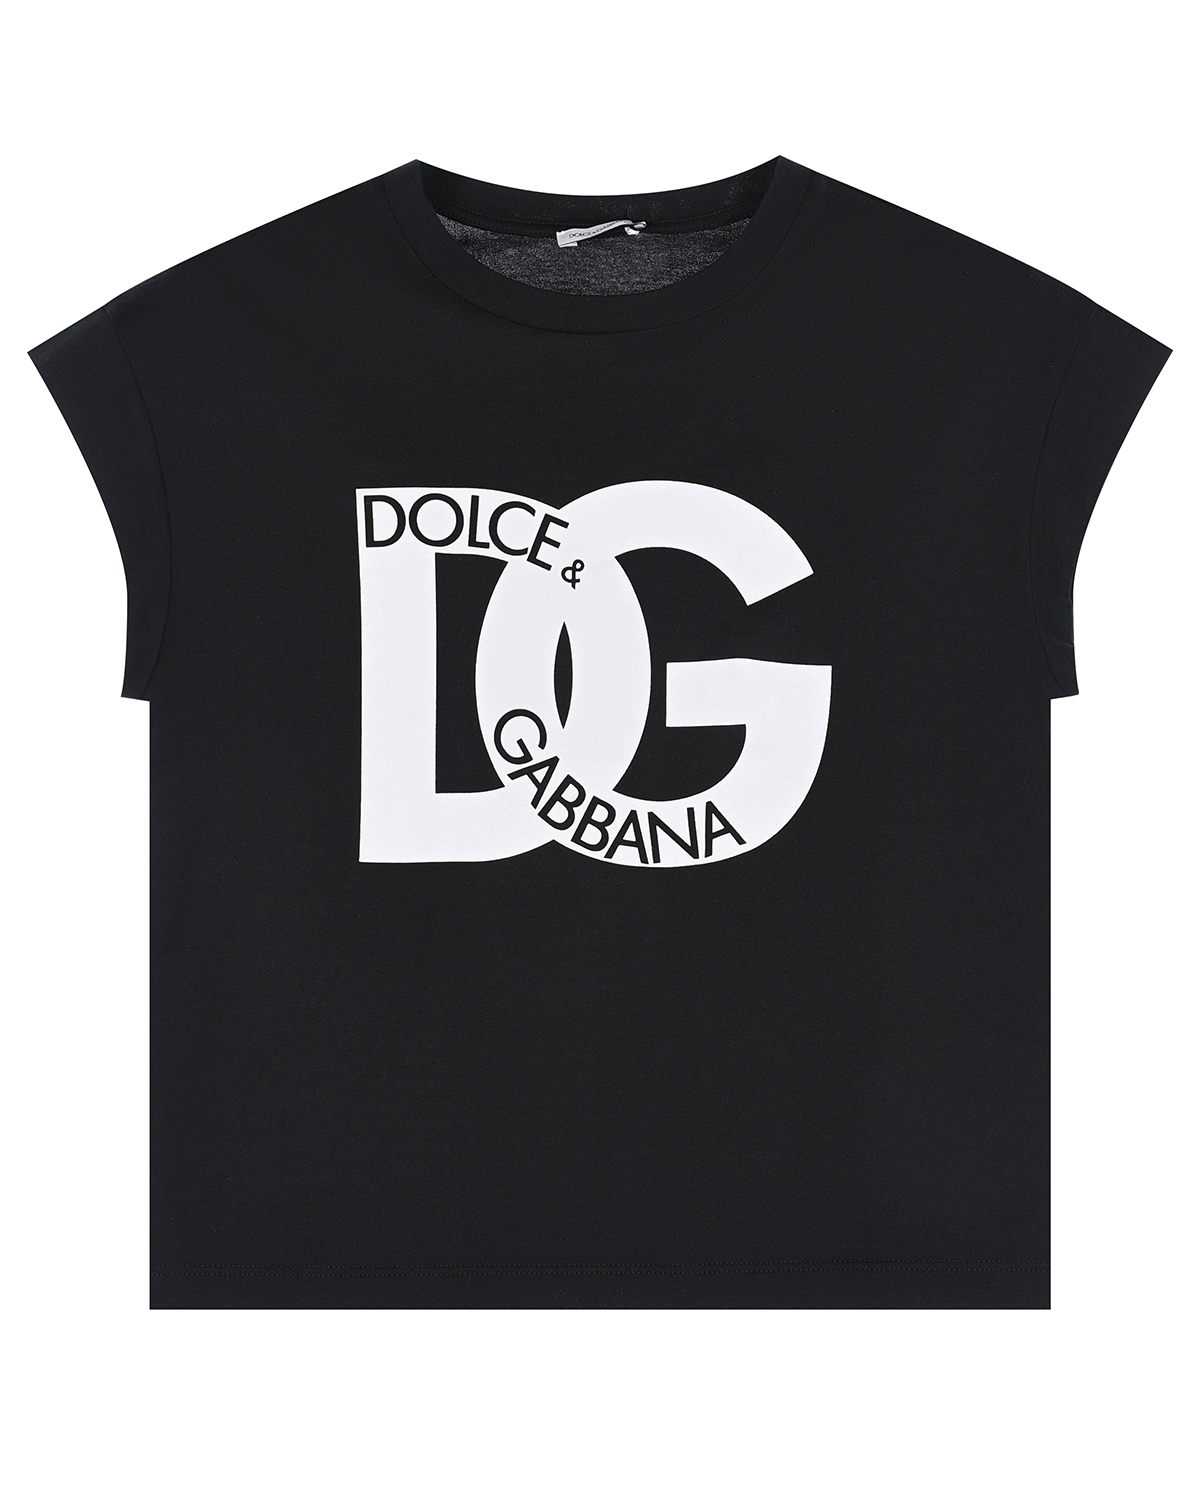 Черная футболка с крупным белым лого Dolce&Gabbana черная толстовка худи dolce